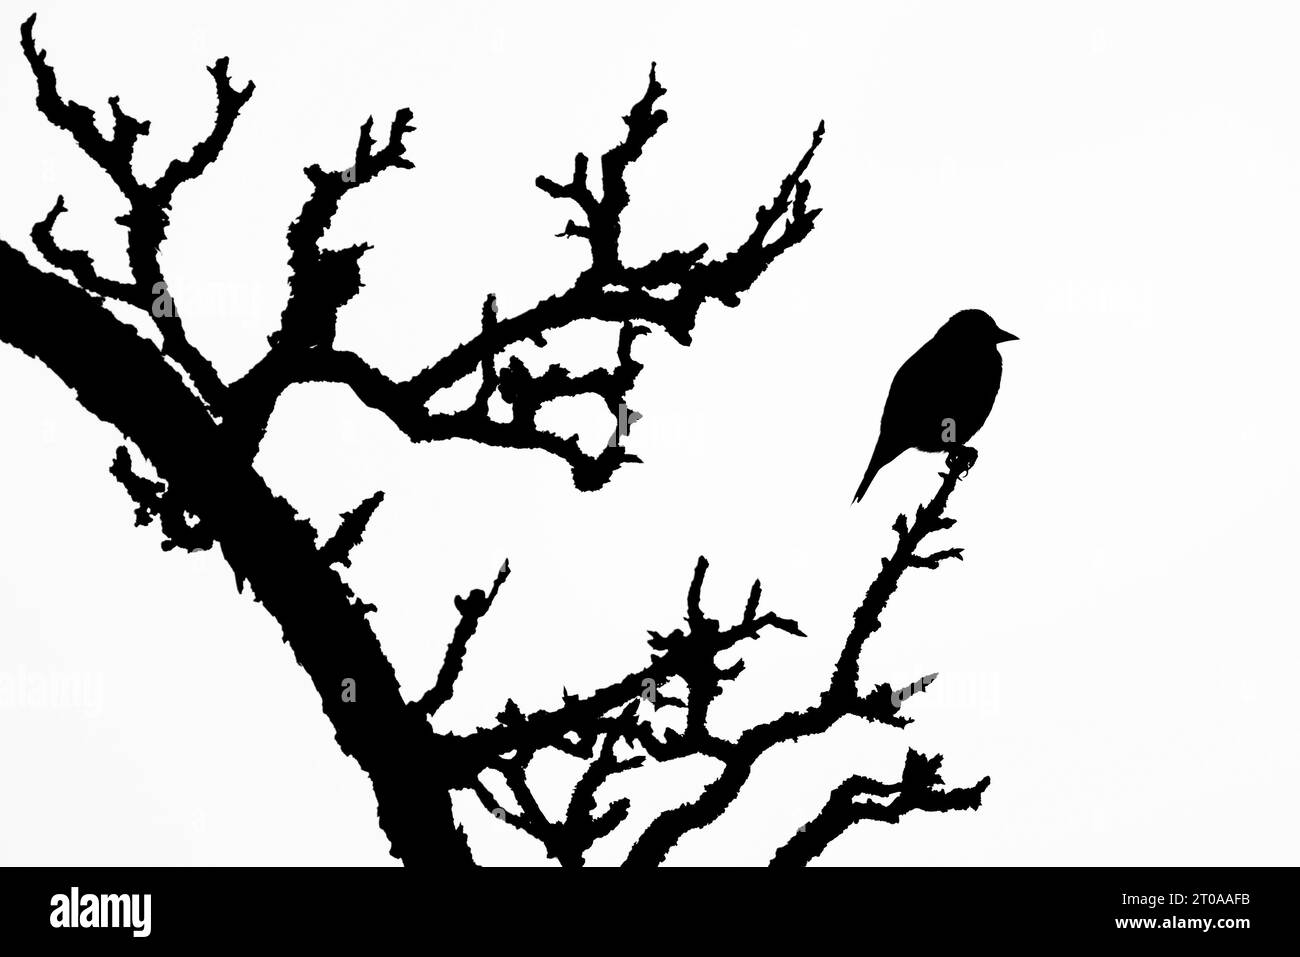 Sehr fette Vogel sitzt auf der Baumspitze. Schwarz-weiße Silhouettenabbildung. Stockfoto